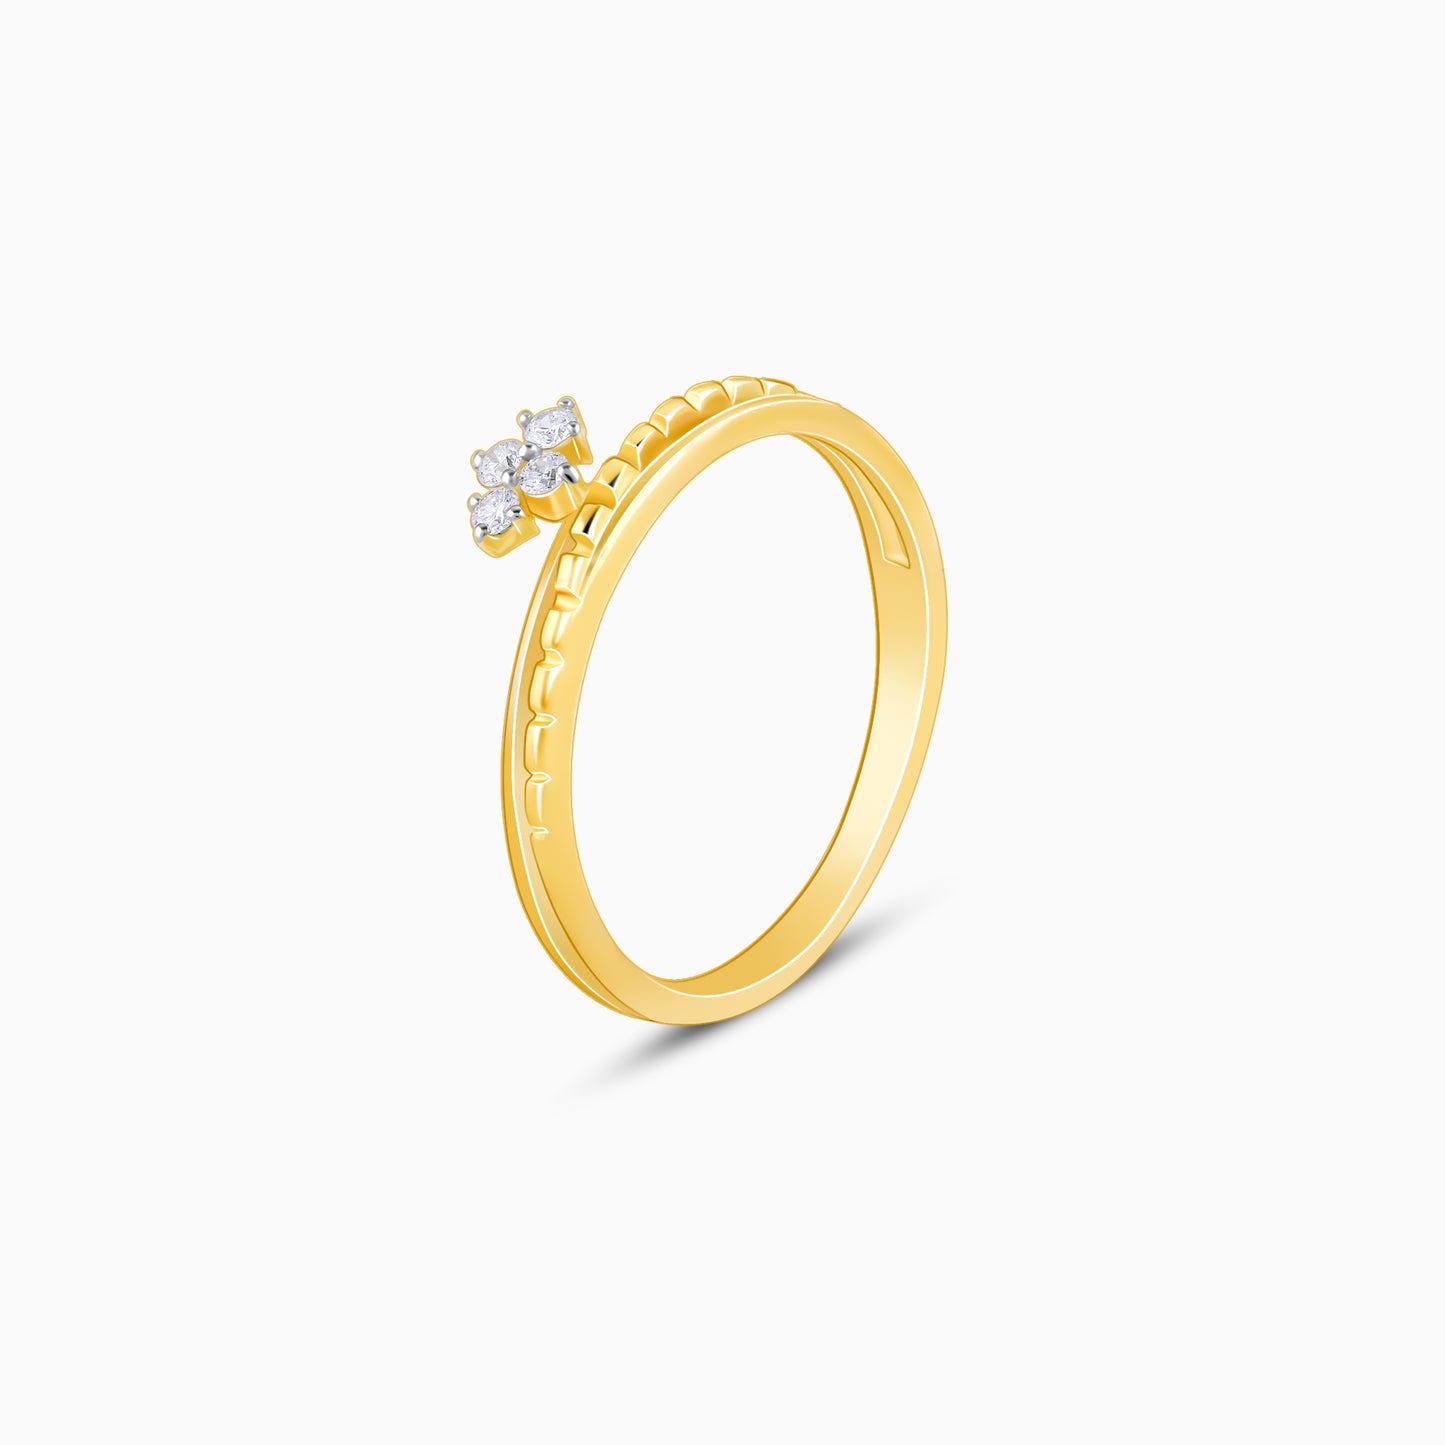 Gold Crown Elegance Diamond Ring